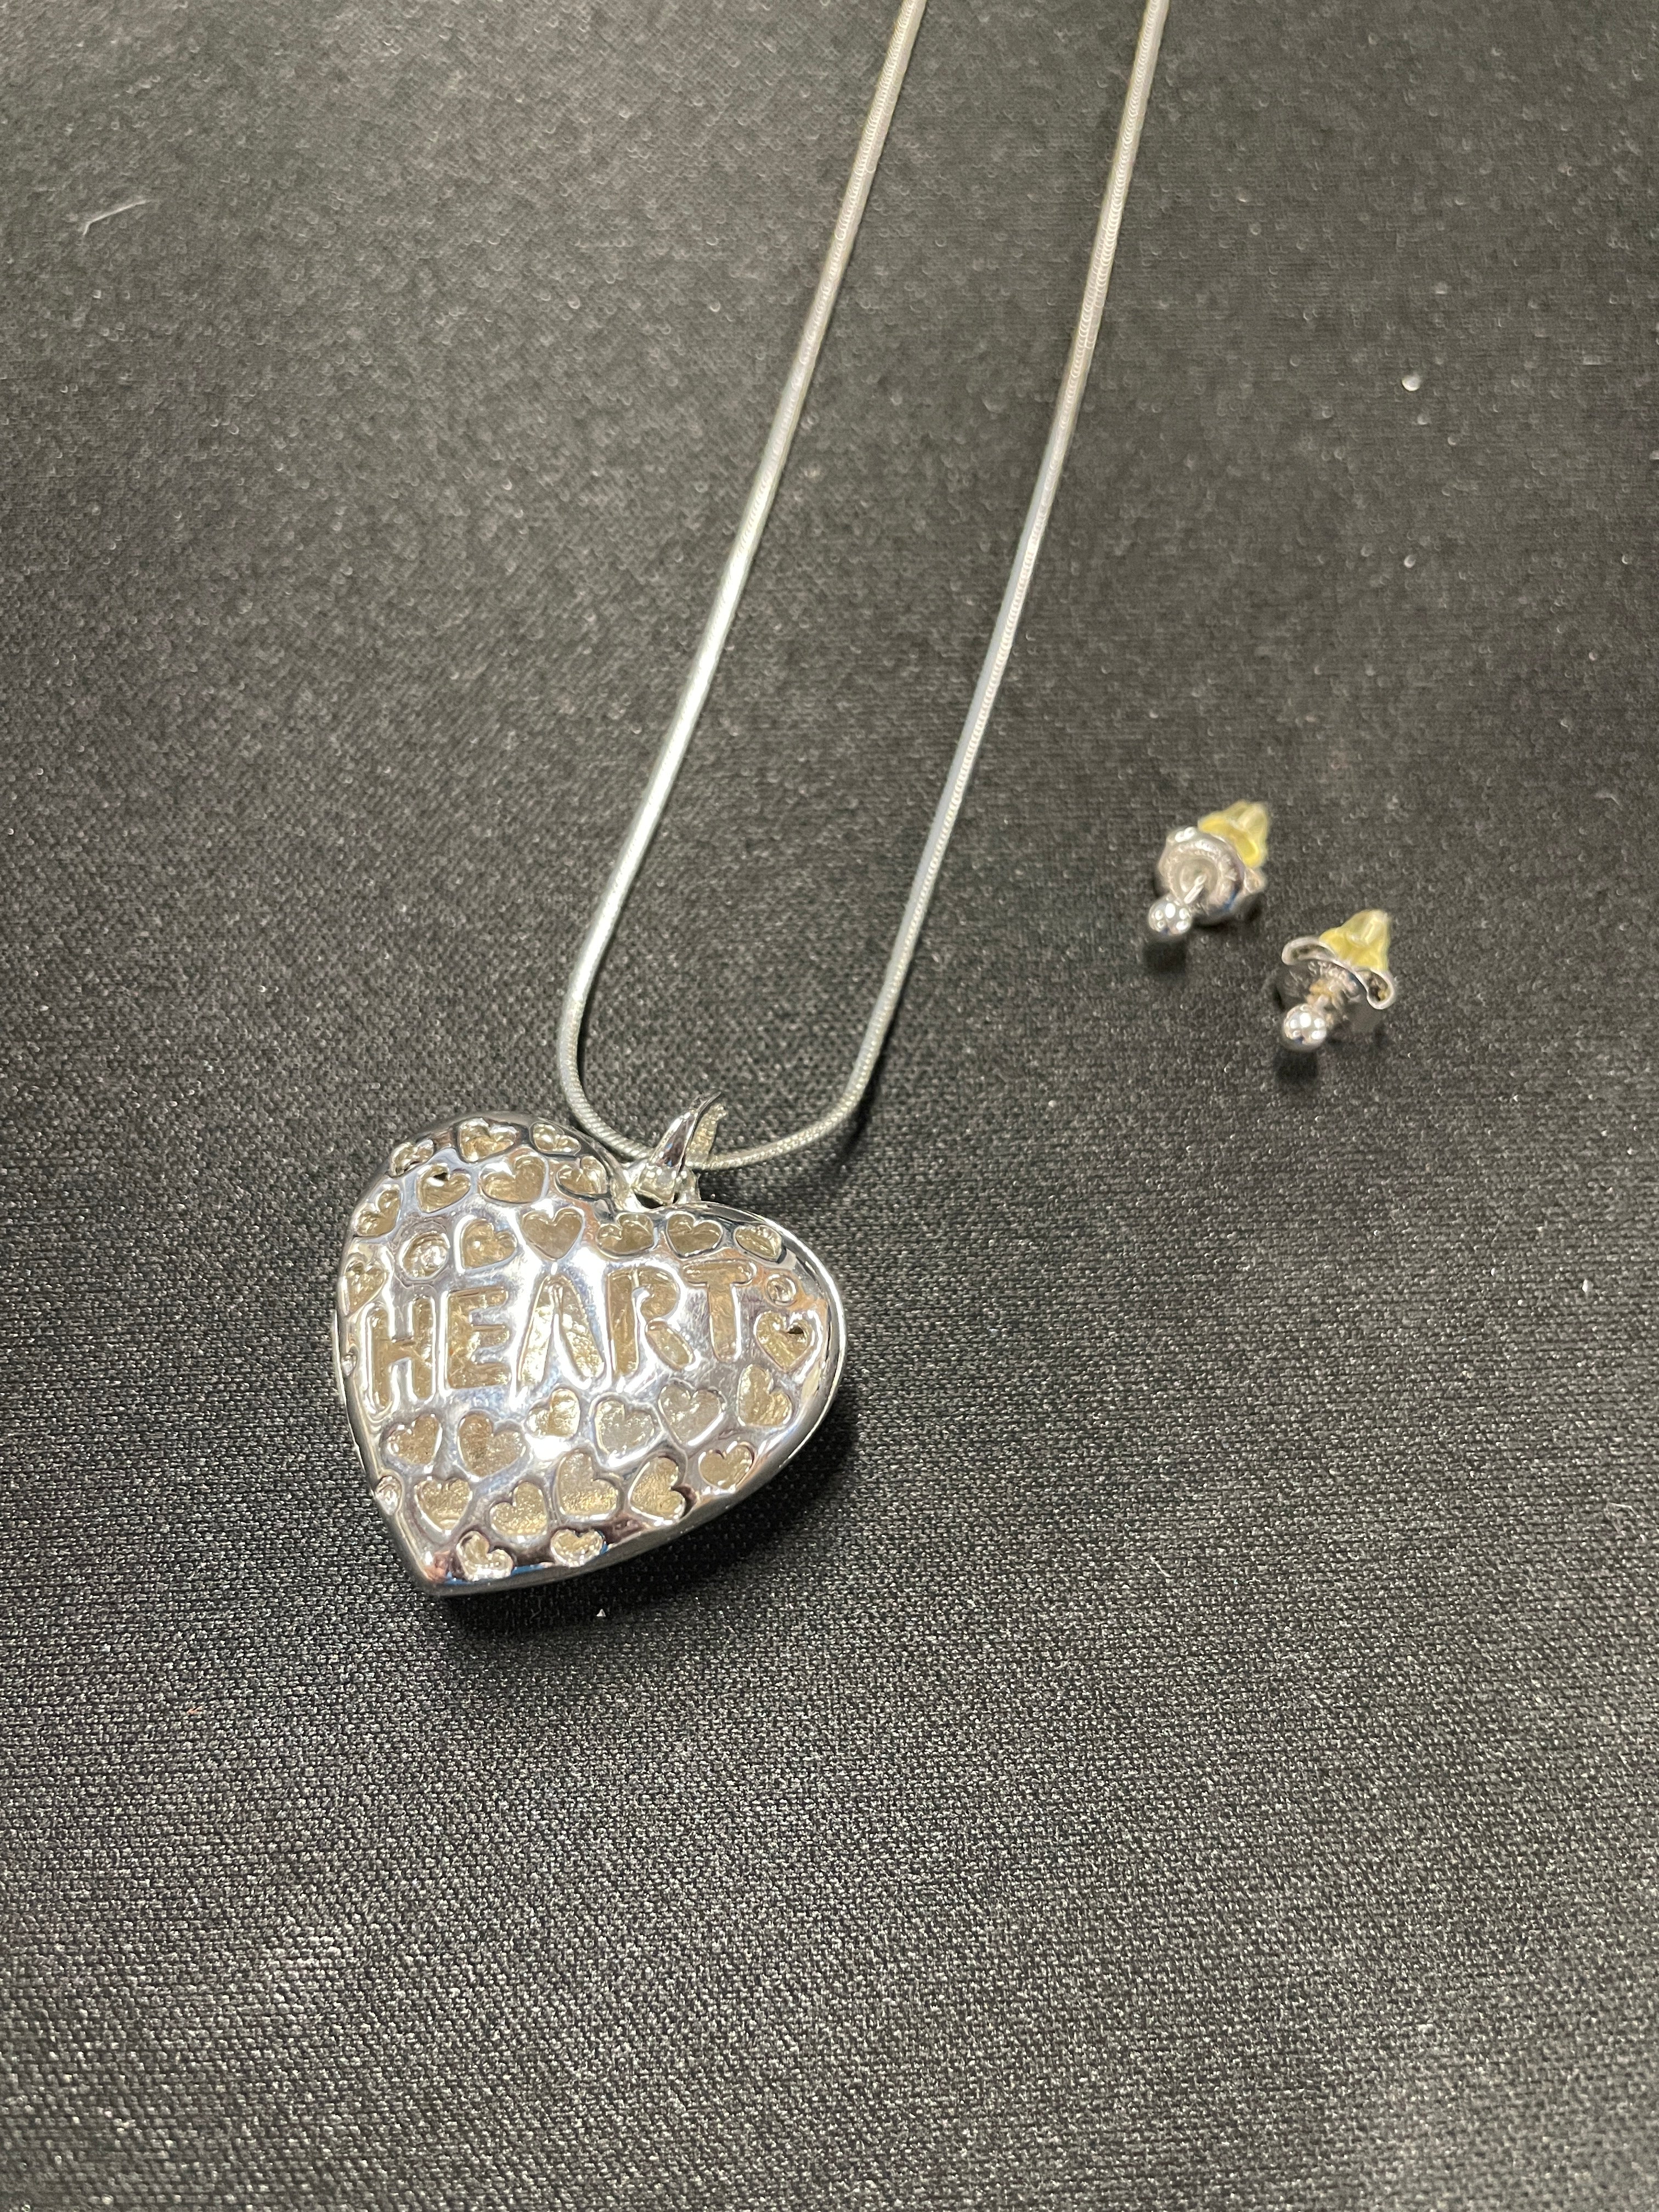 Swarovski Crystal Heart Pendant In Sterling Silver